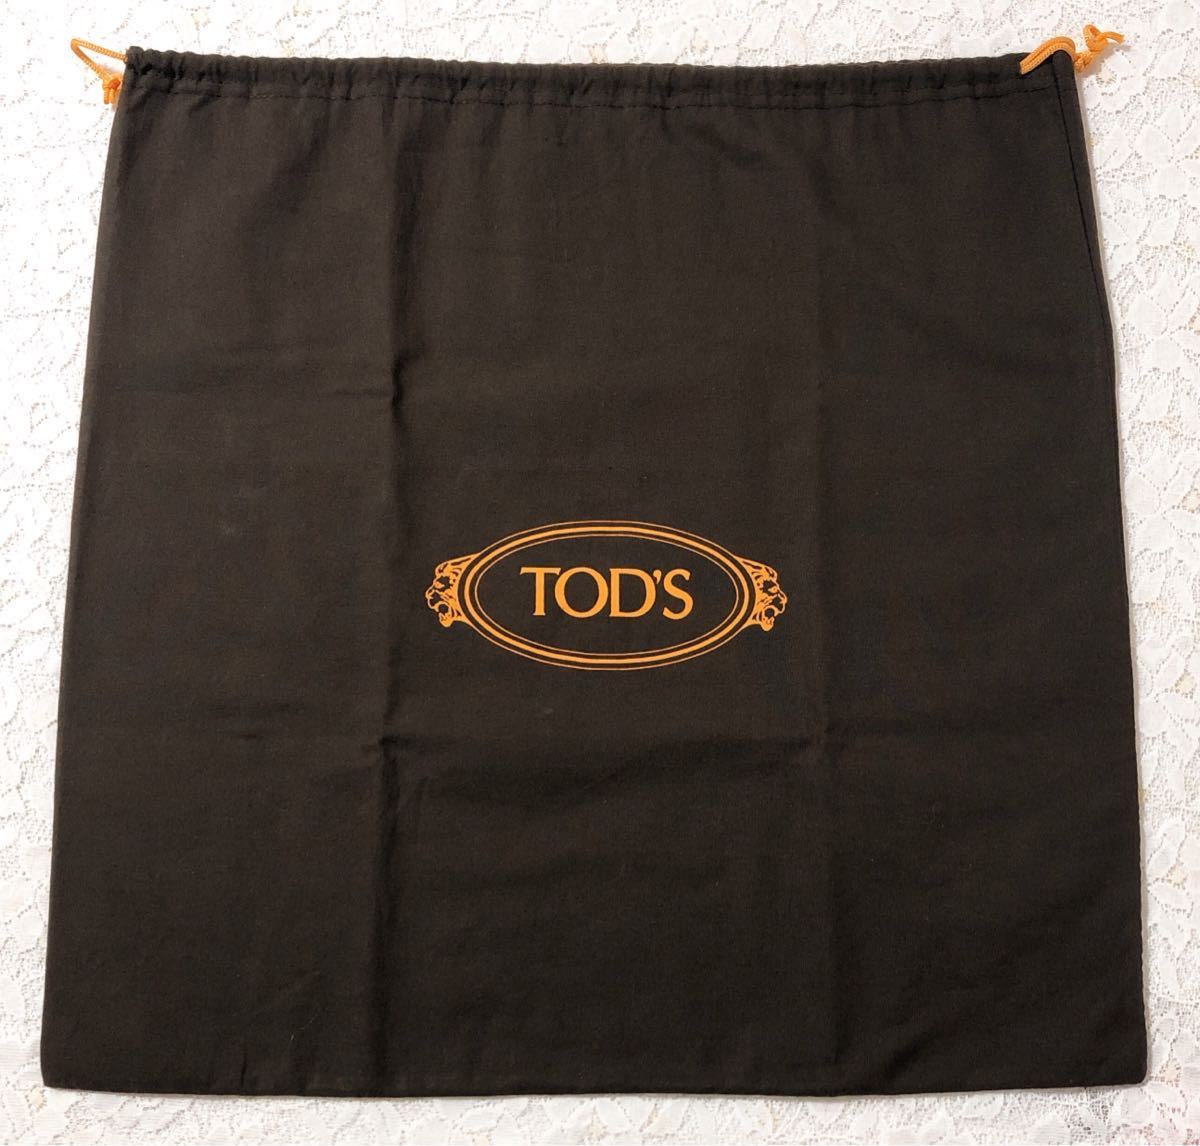 トッズ「TOD'S」バッグ保存袋 旧型（3131) 正規品 付属品 内袋 布袋 巾着袋 ダークブラウン 48×48cm 布製 